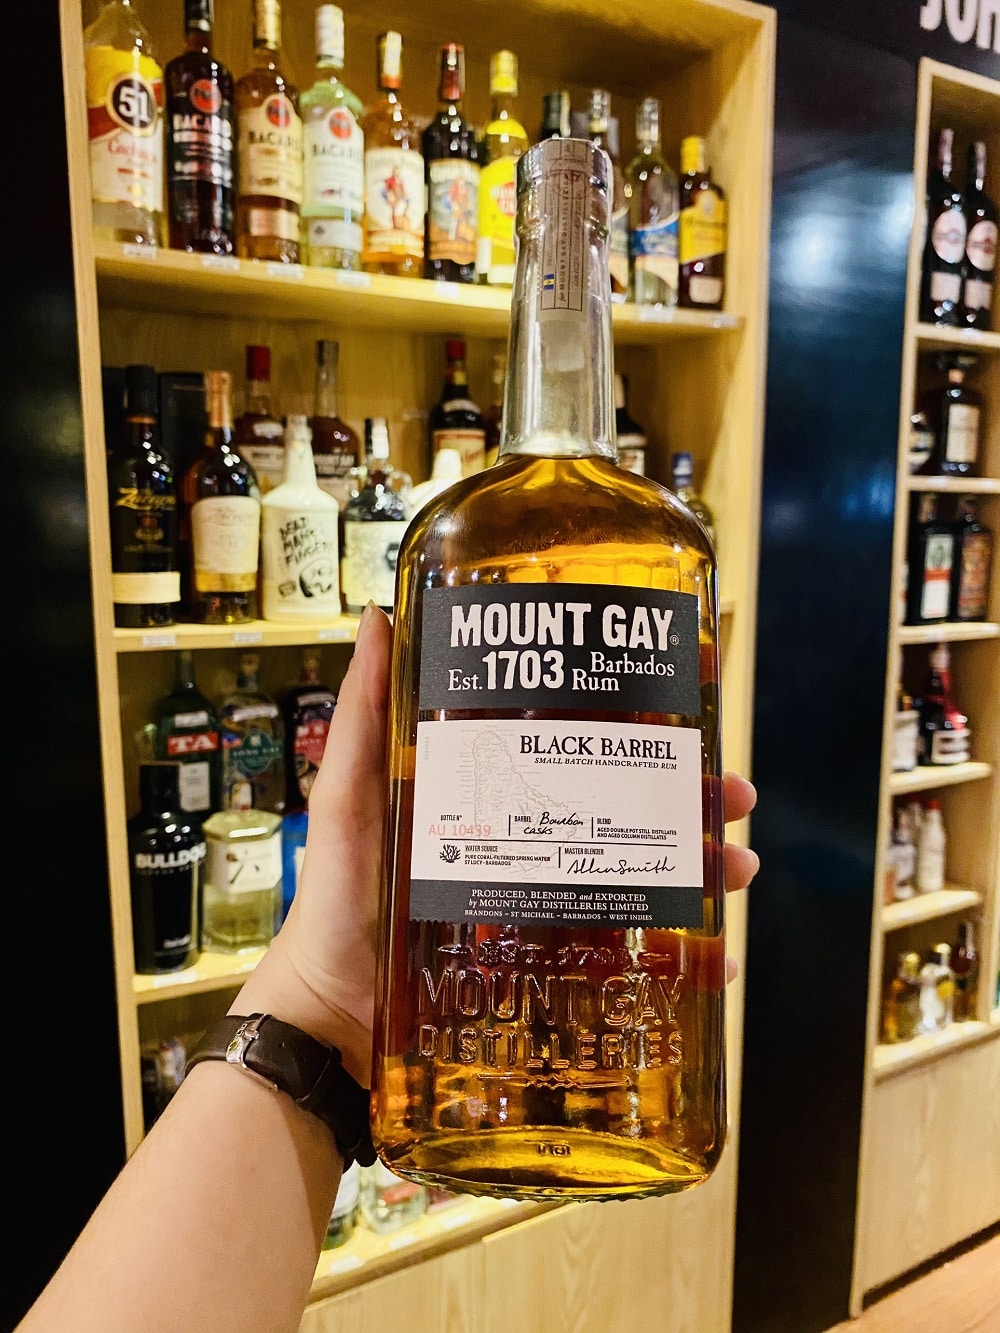 Mua rượu Mount Gay Black Barrel ở Đà Nẵng tại Hải Gia Cát